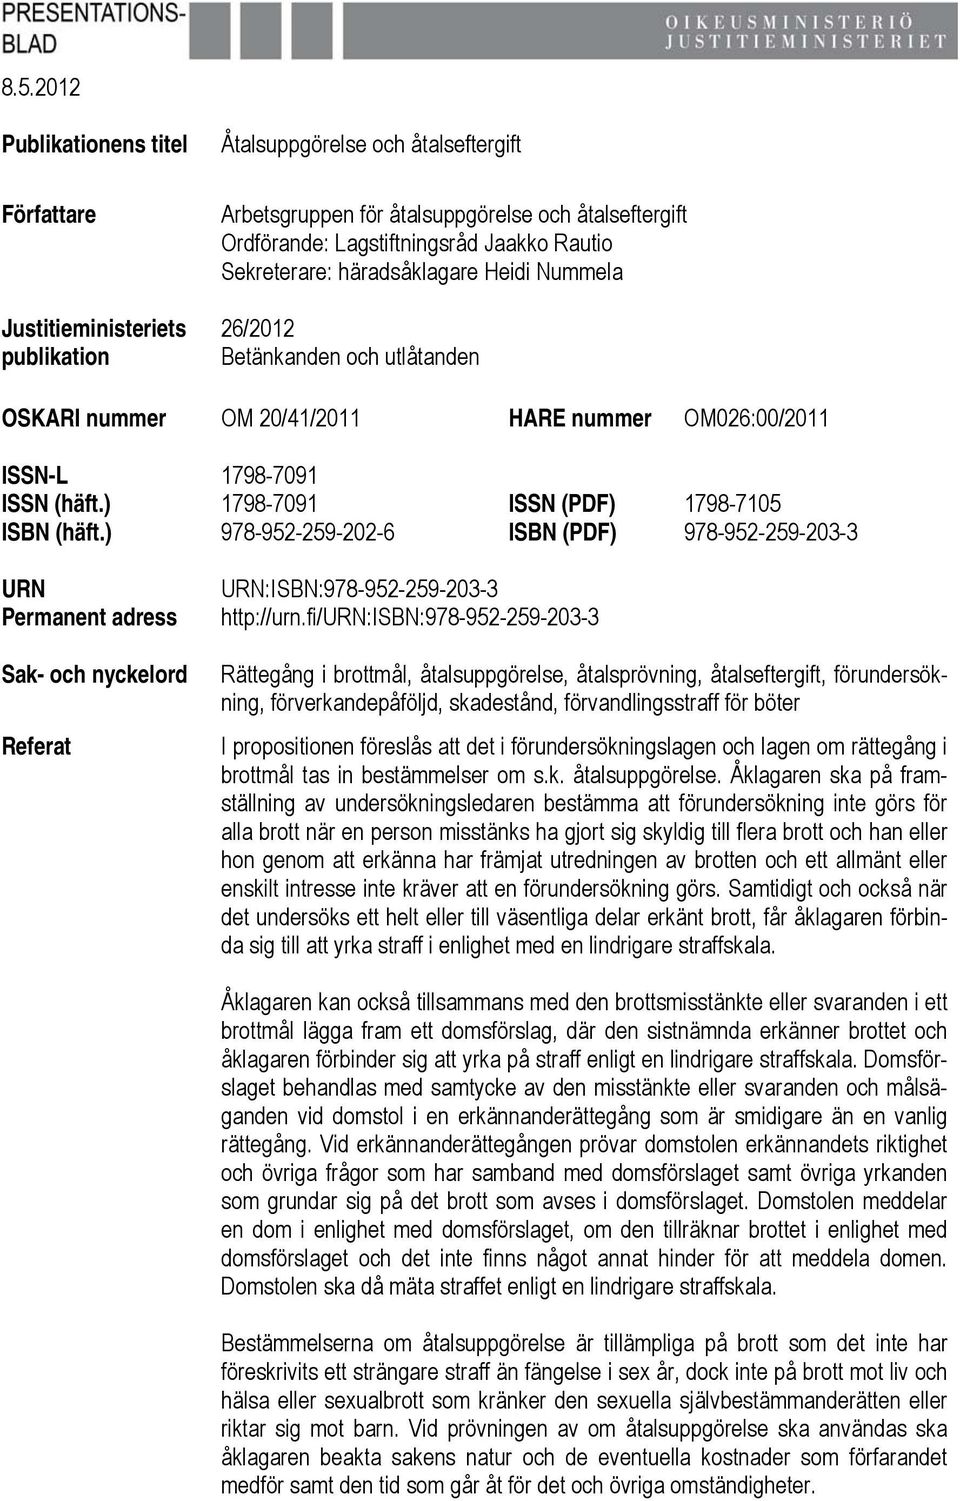 ) 1798-7091 ISSN (PDF) 1798-7105 ISBN (häft.) 978-952-259-202-6 ISBN (PDF) 978-952-259-203-3 URN Permanent adress Sak- och nyckelord Referat URN:ISBN:978-952-259-203-3 http://urn.